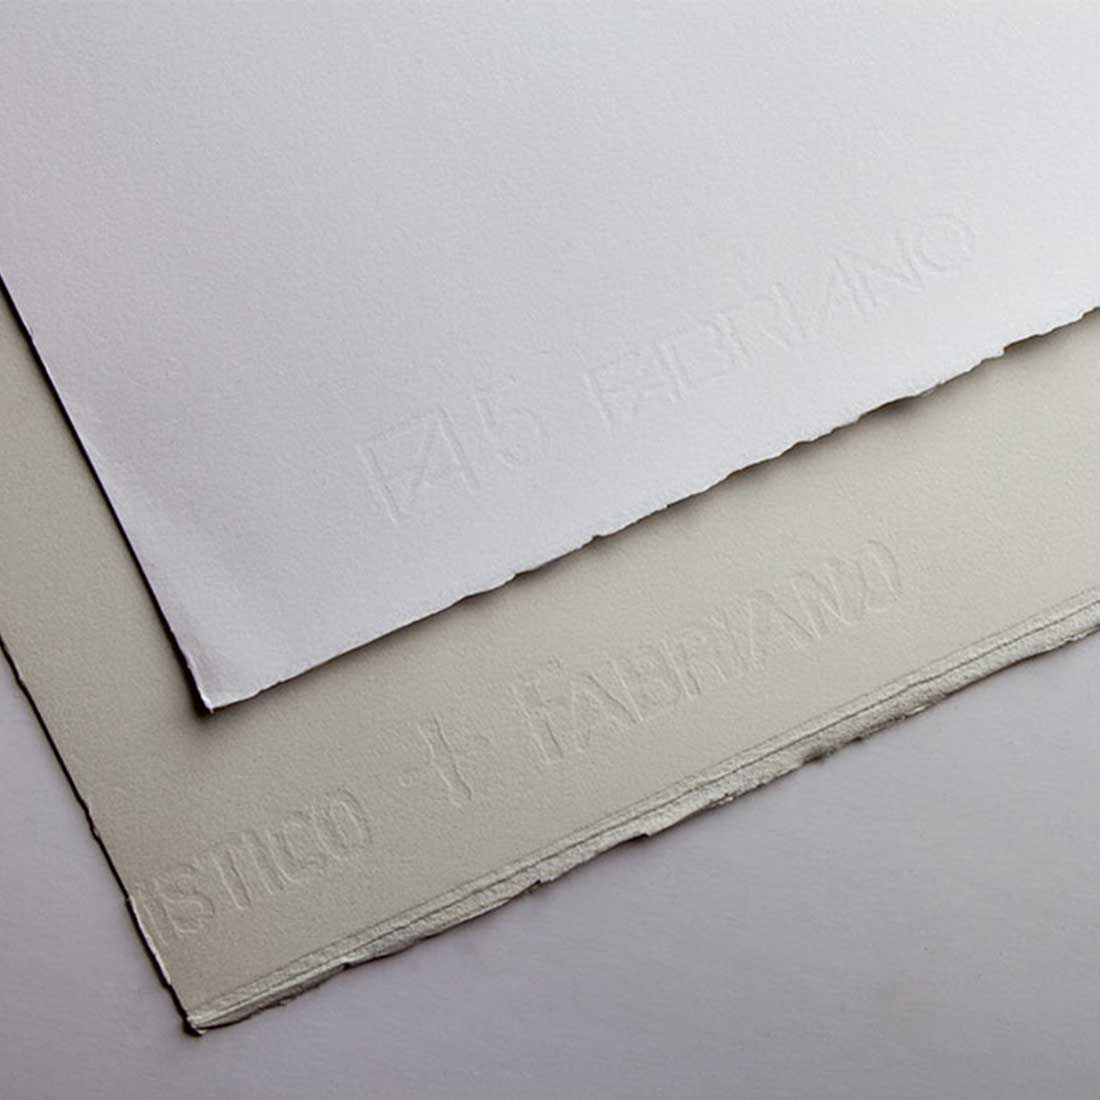 Fabriano Artistico Watercolor Paper Roll 140lb Hot Press - 55 x 11yd,  Extra White